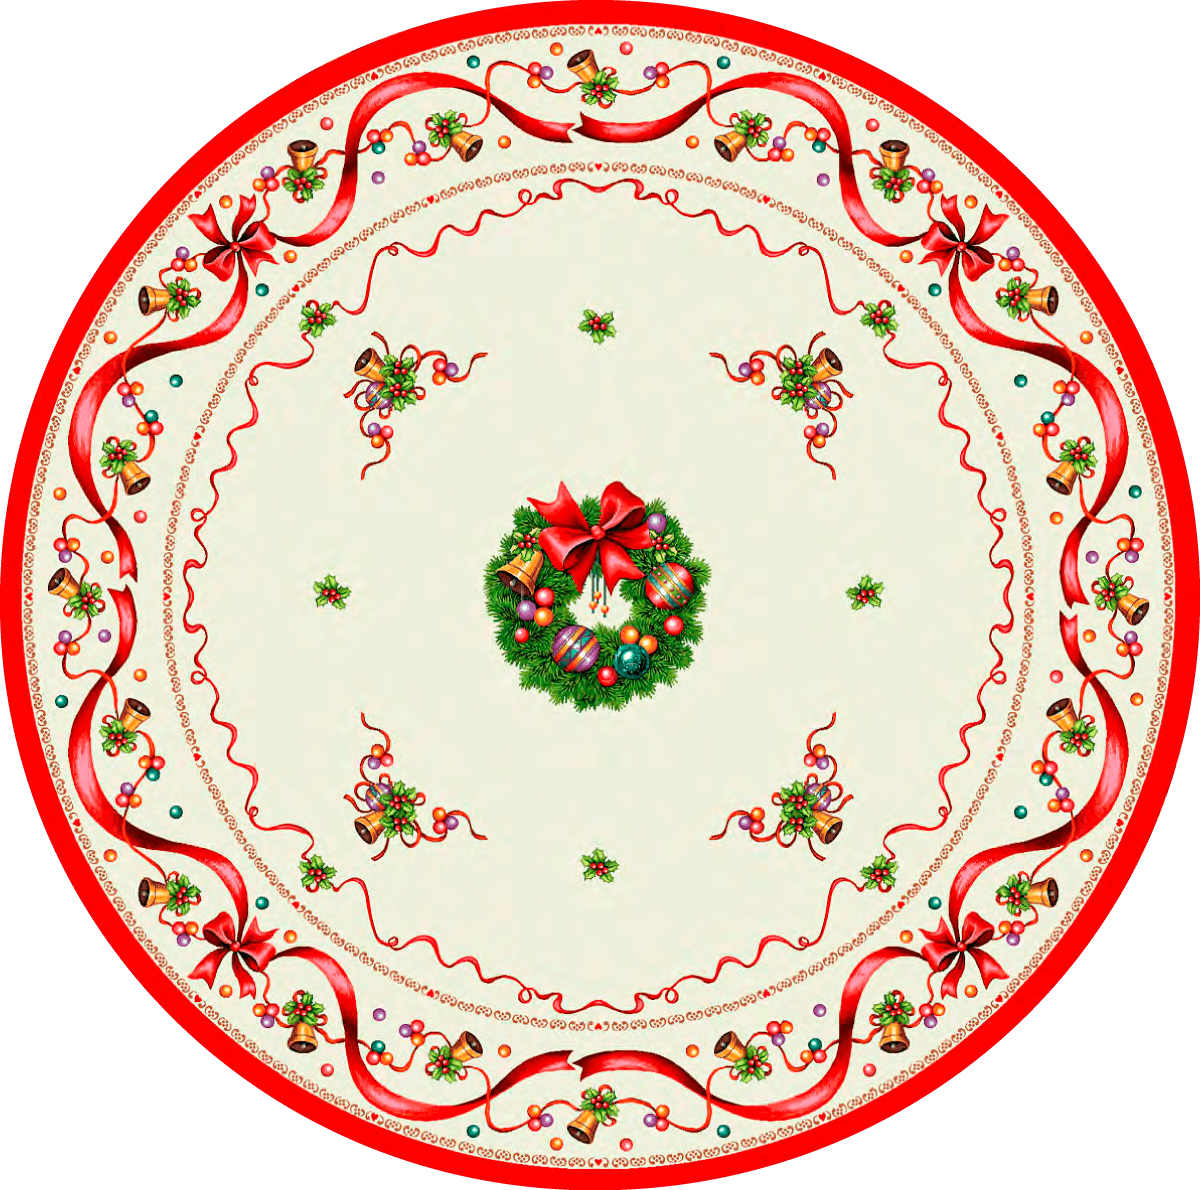 Χριστουγεννιάτικο Τραπεζομάντηλο Ροτόντα Δ1.86 Vassiliadis Sun 010